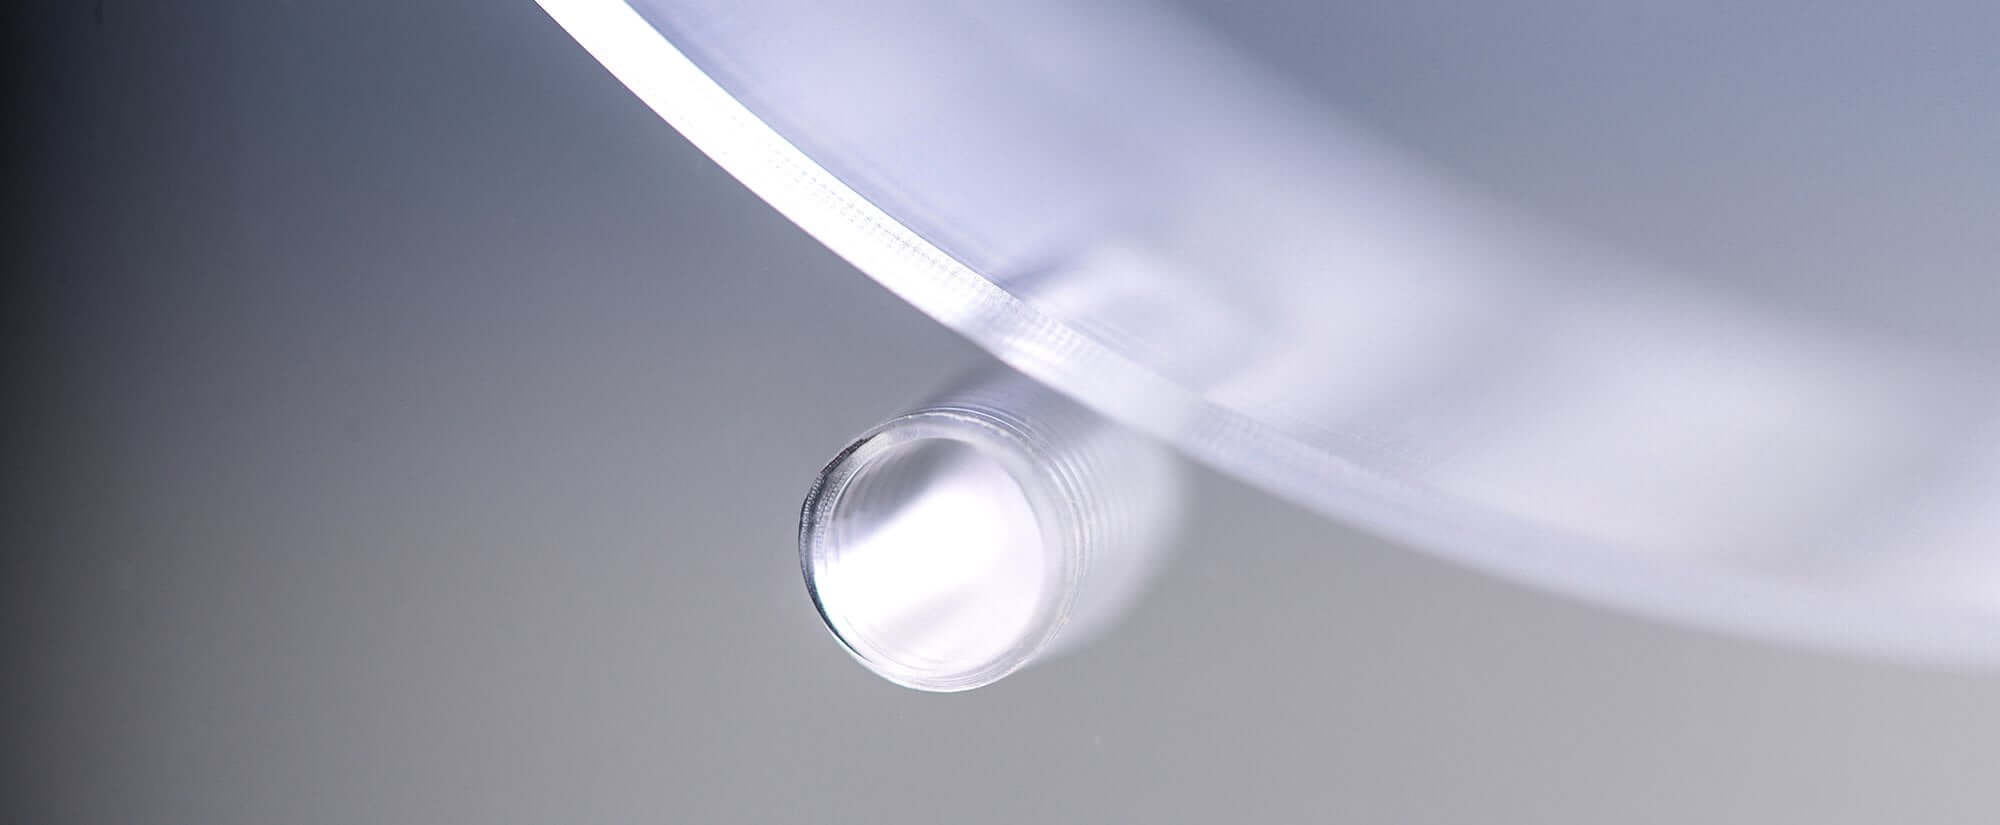 Acryline Basisplatte aus Acrylglas mit Tiefbohrungen technische teile gebohrt tiefgebohrt gefräst zubehör basisteil acryl kunststoff produktion